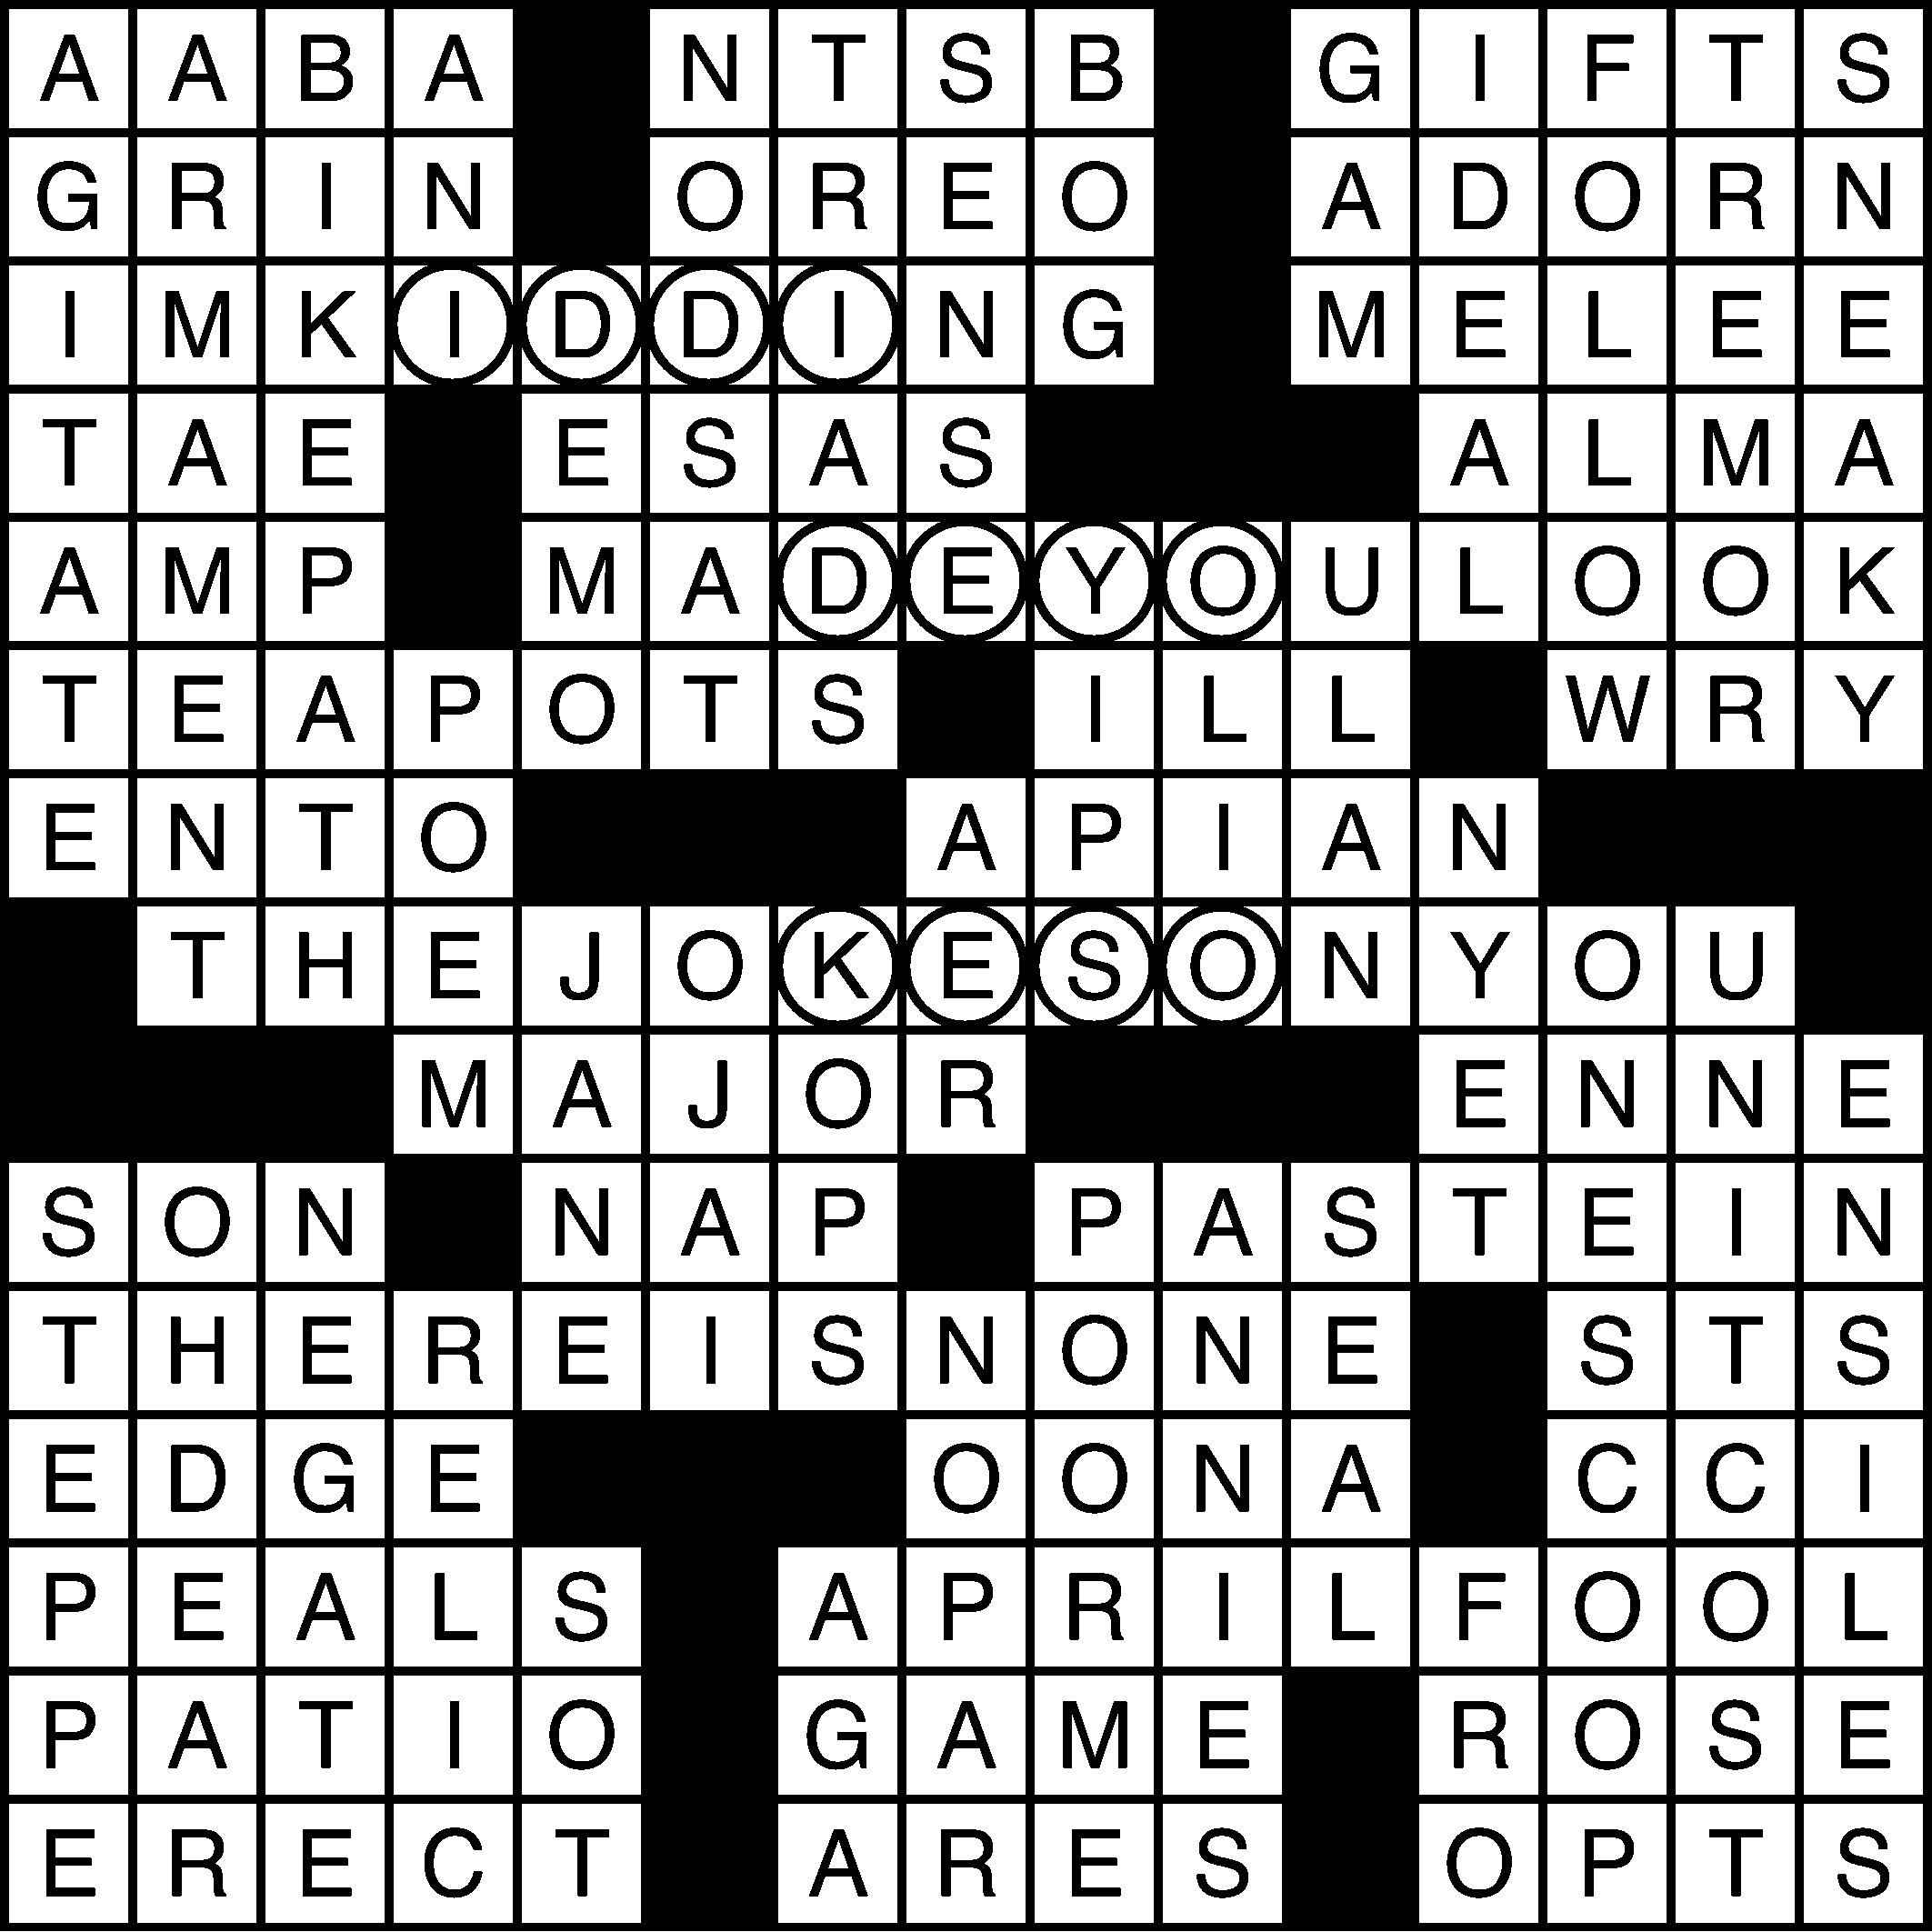 forward 6 letter crossword clue